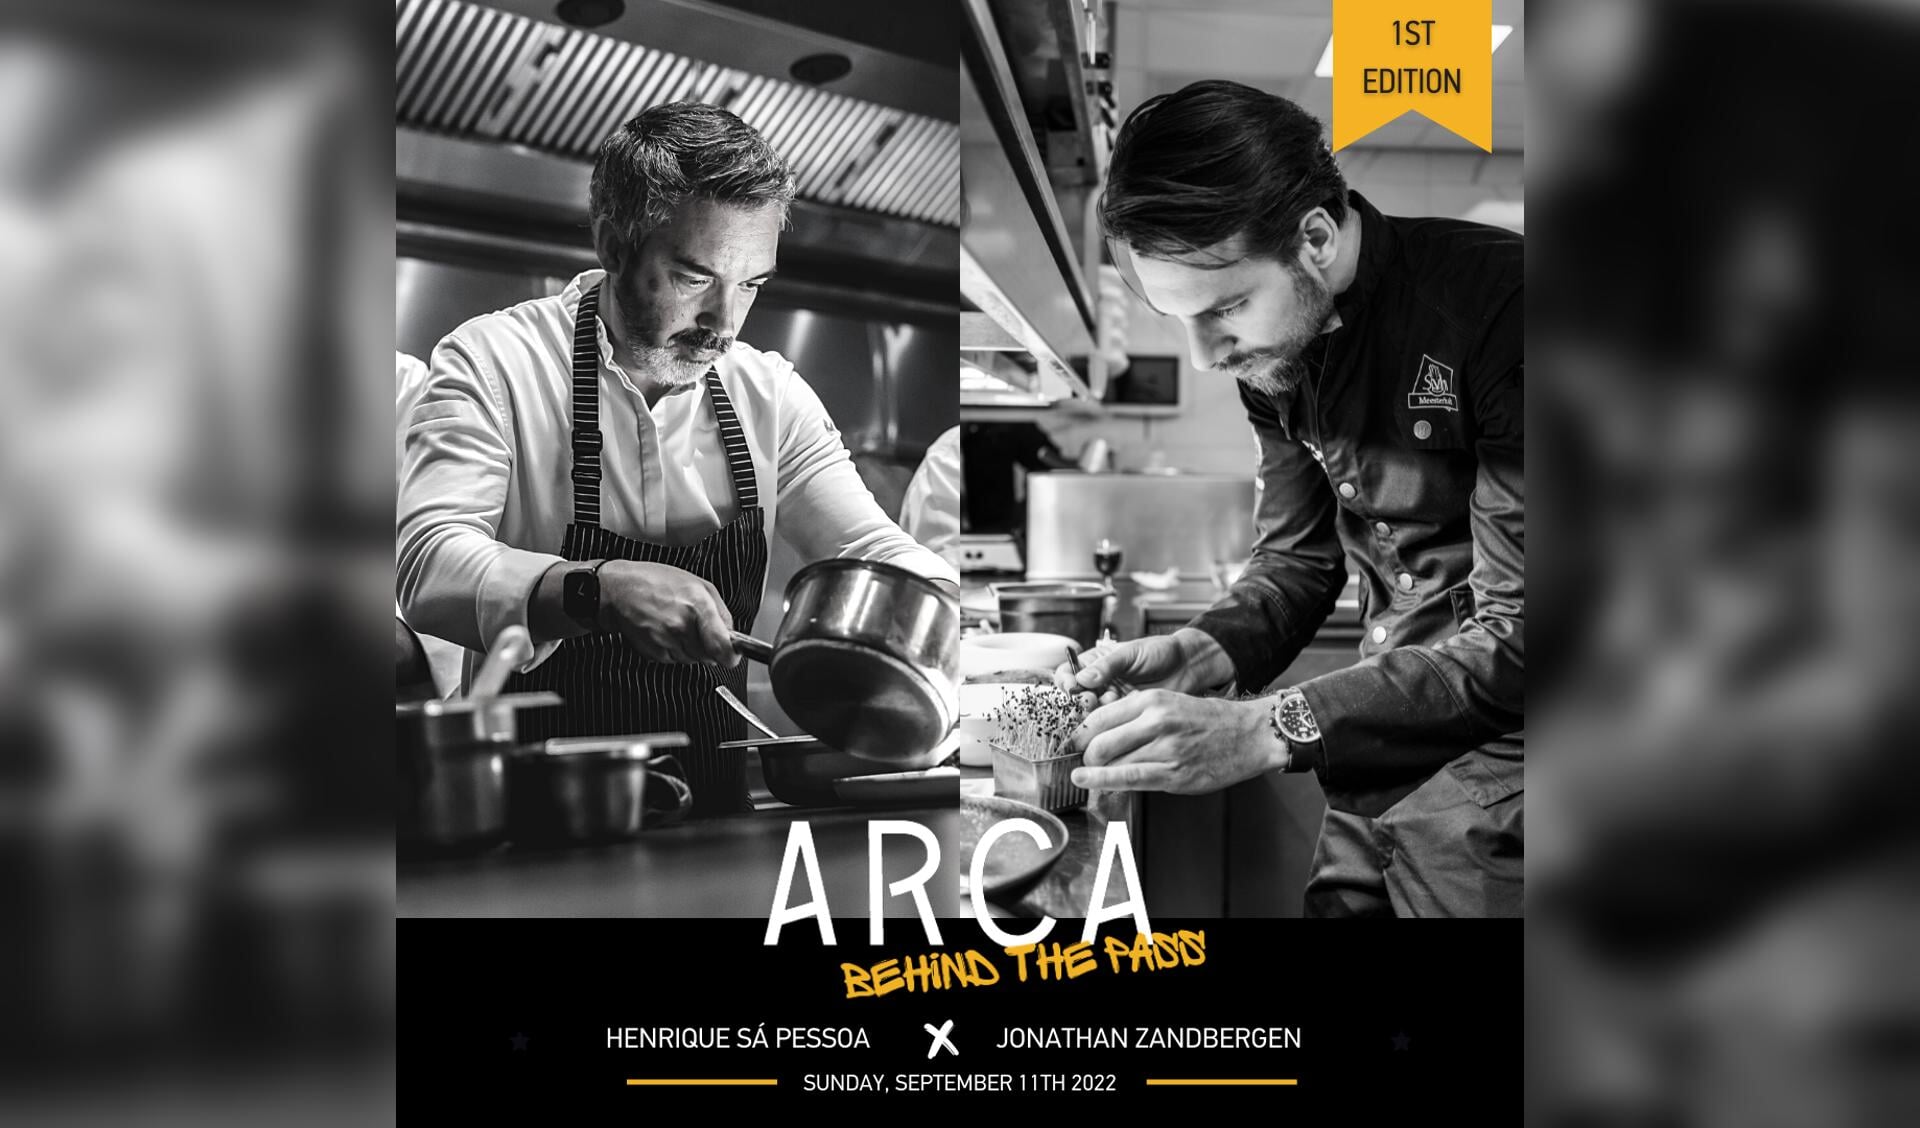 In deze eerste editie slaan chef-kok Henrique Sá Pessoa en Jonathan Zandbergen (Restaurant Merlet) de handen ineen